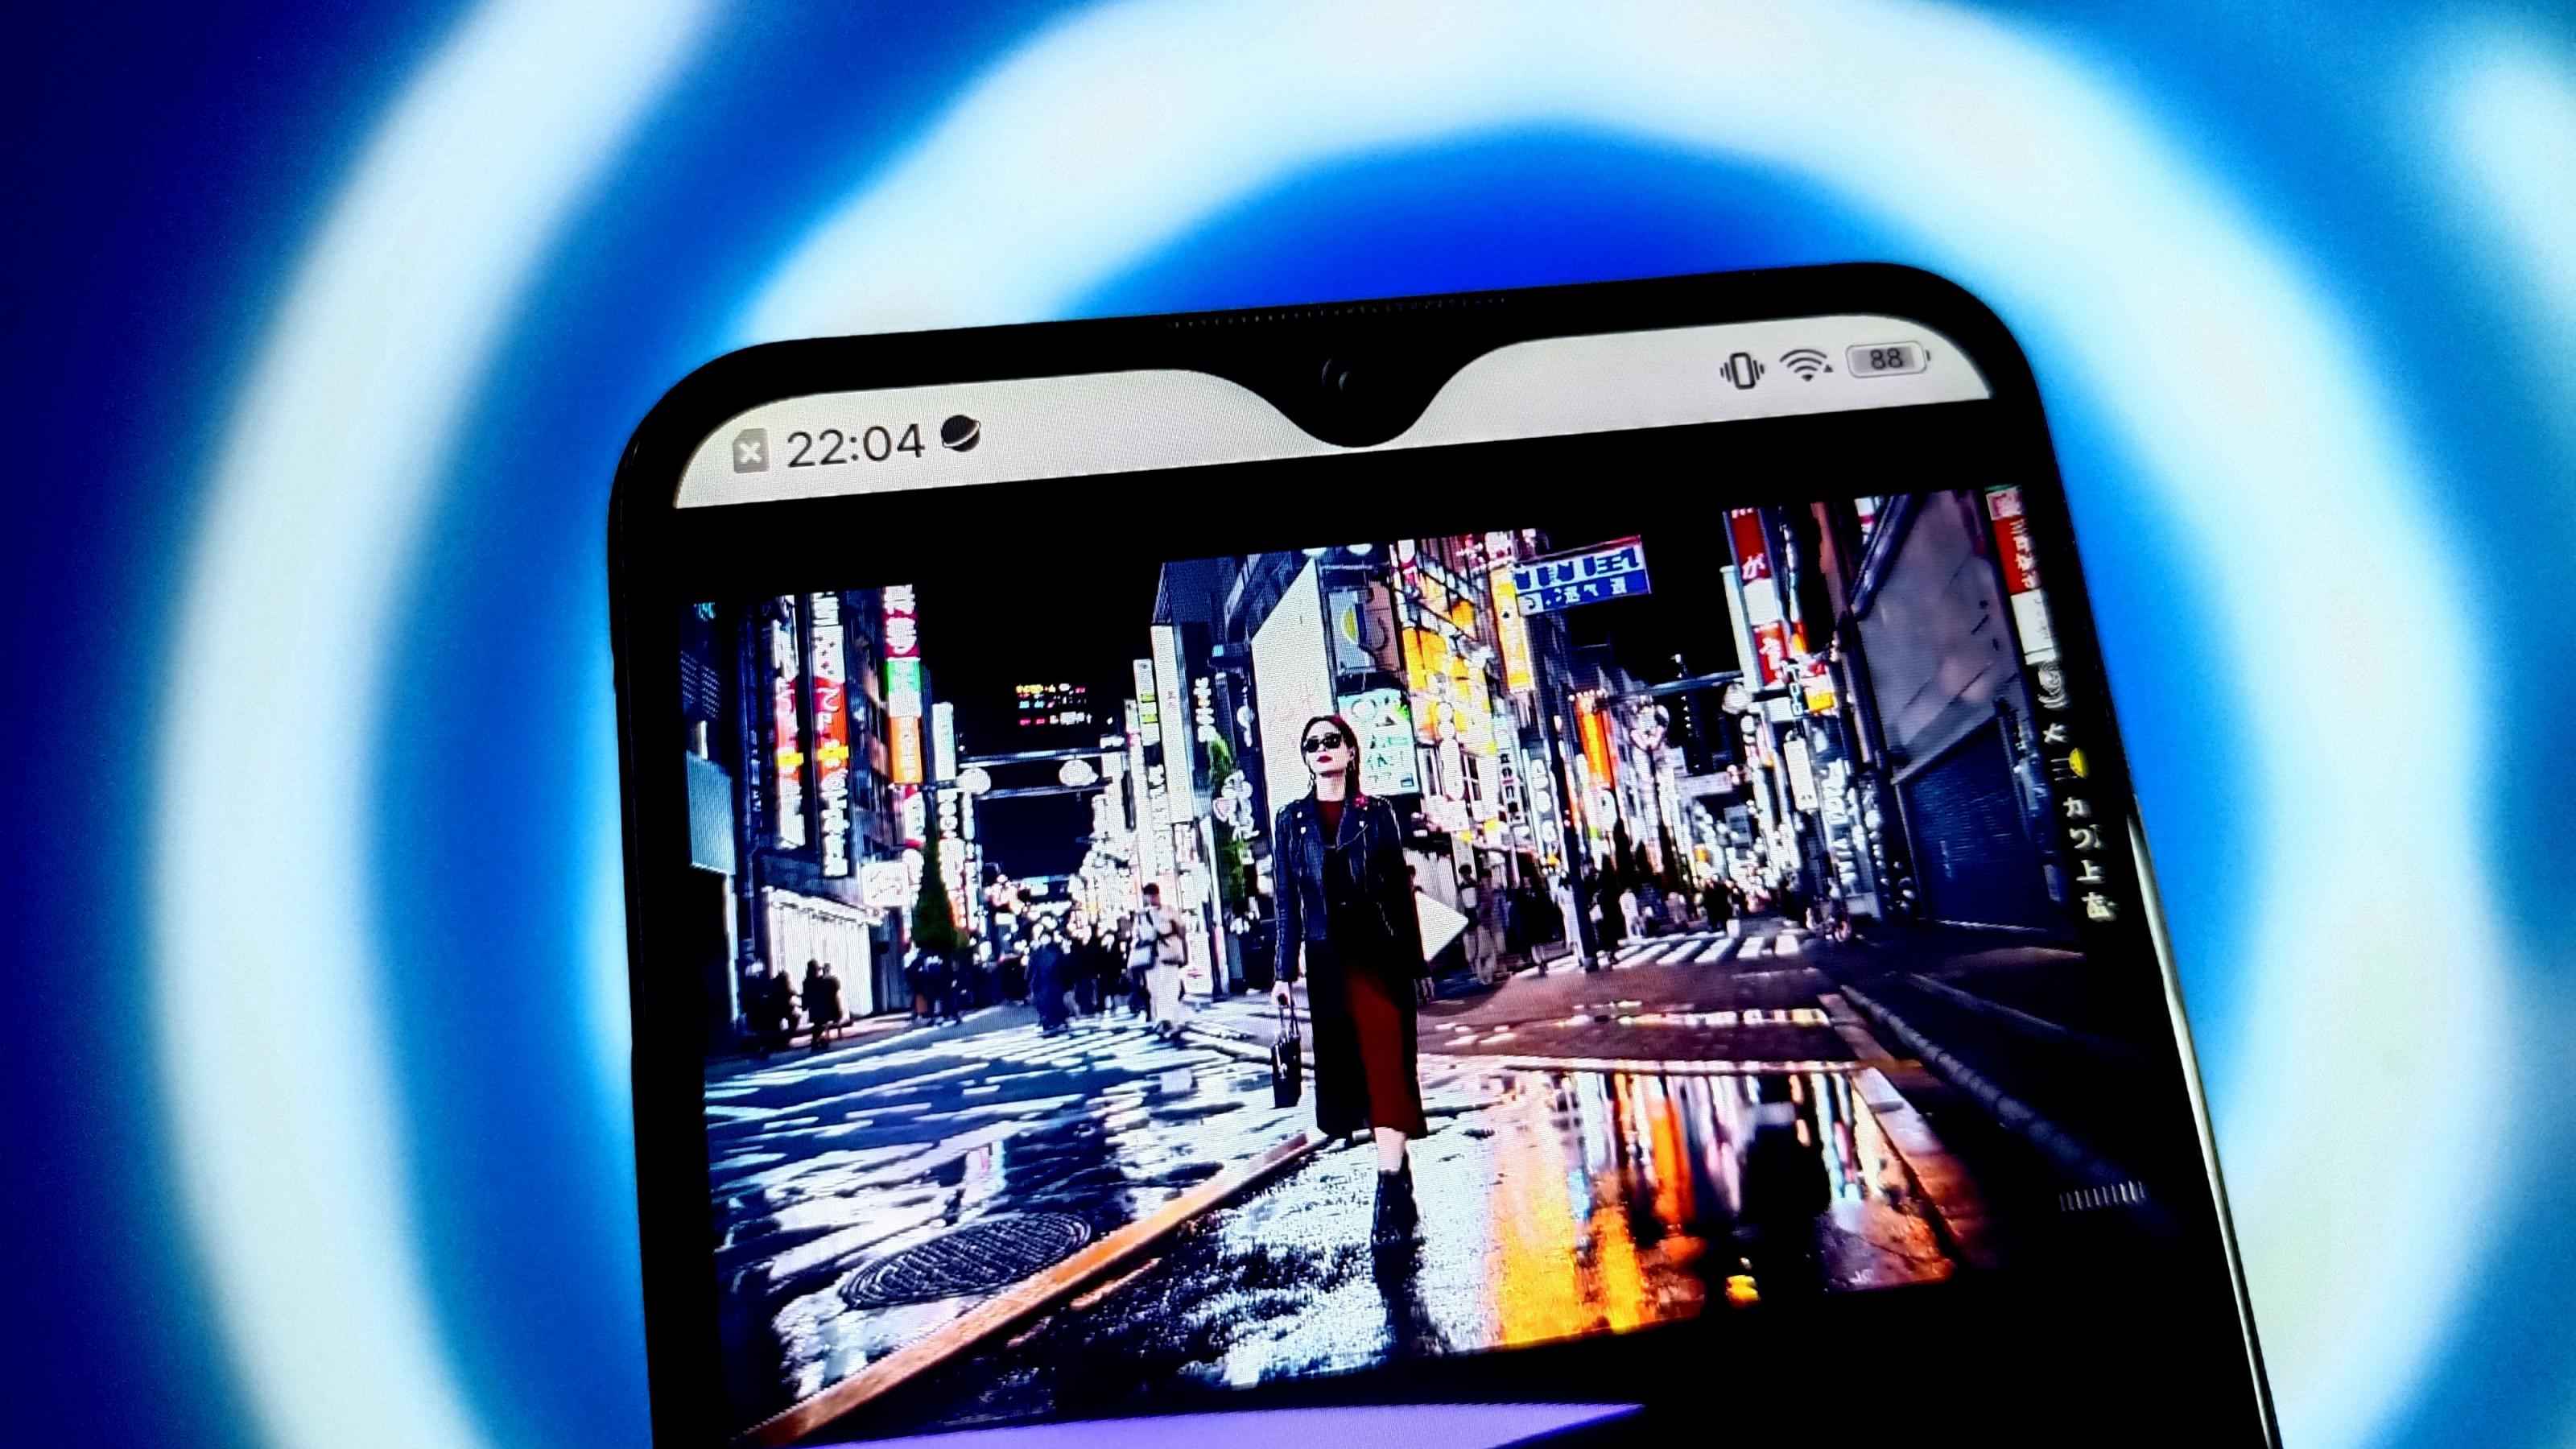 Ein Smartphone zeigt ein KI-generiertes Video einer stylish gekleideten Frau, die durchs nächtliche Tokio bummelt. Die Szene wirkt sehr realistisch.